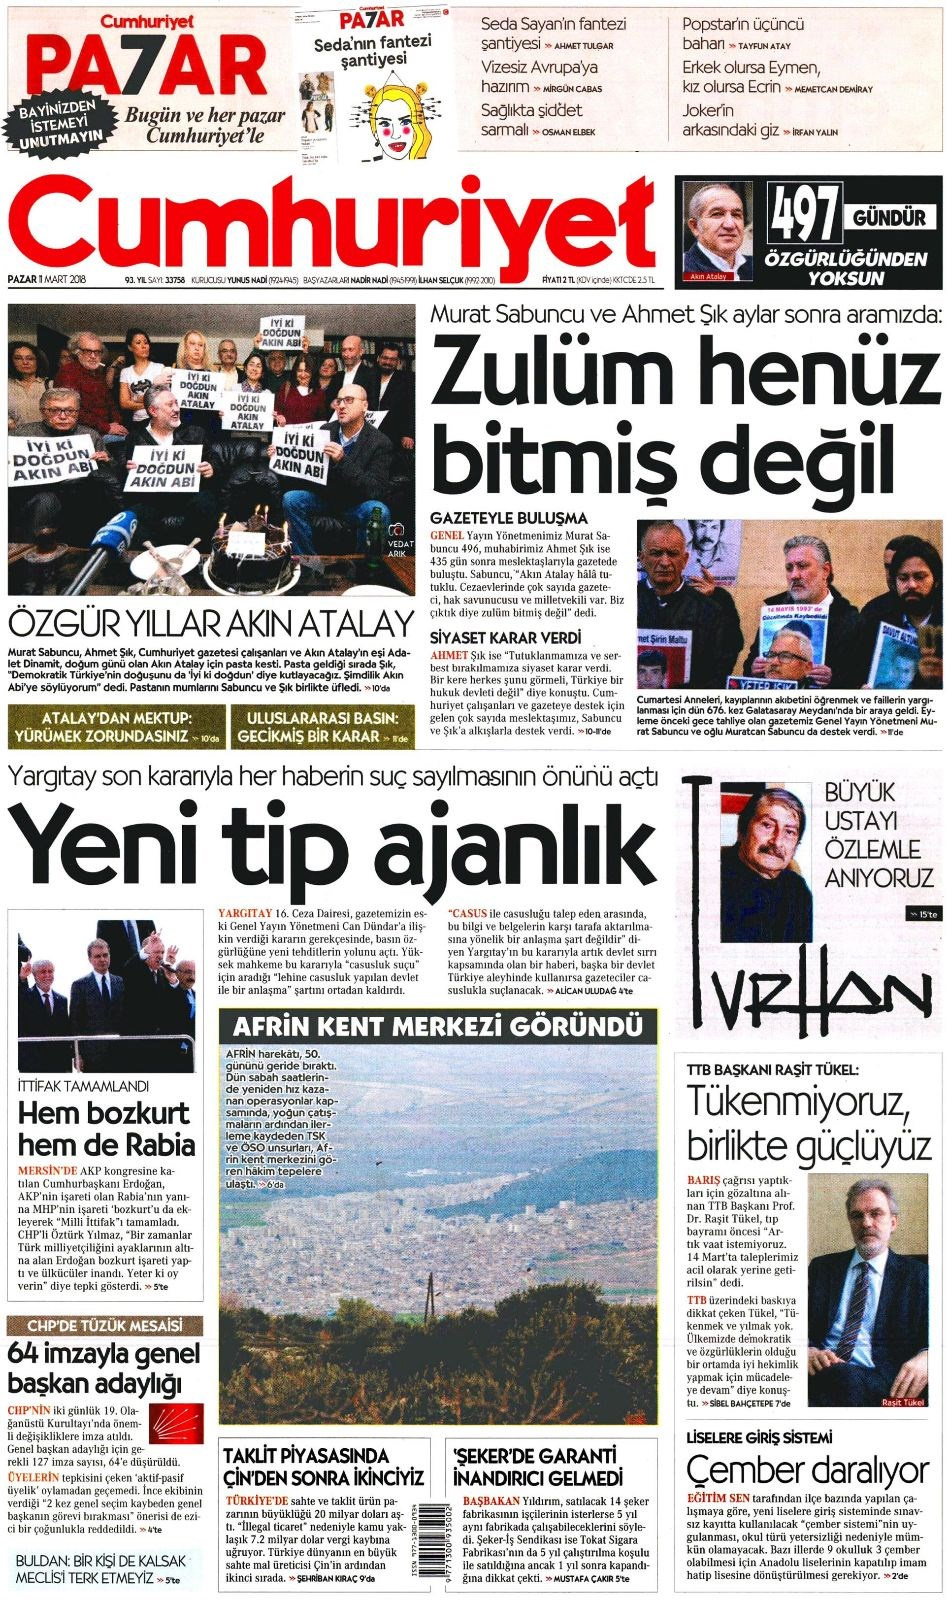 Gazete manşetleri 11 Mart 2018 Hürriyet - Sözcü - Fanatik